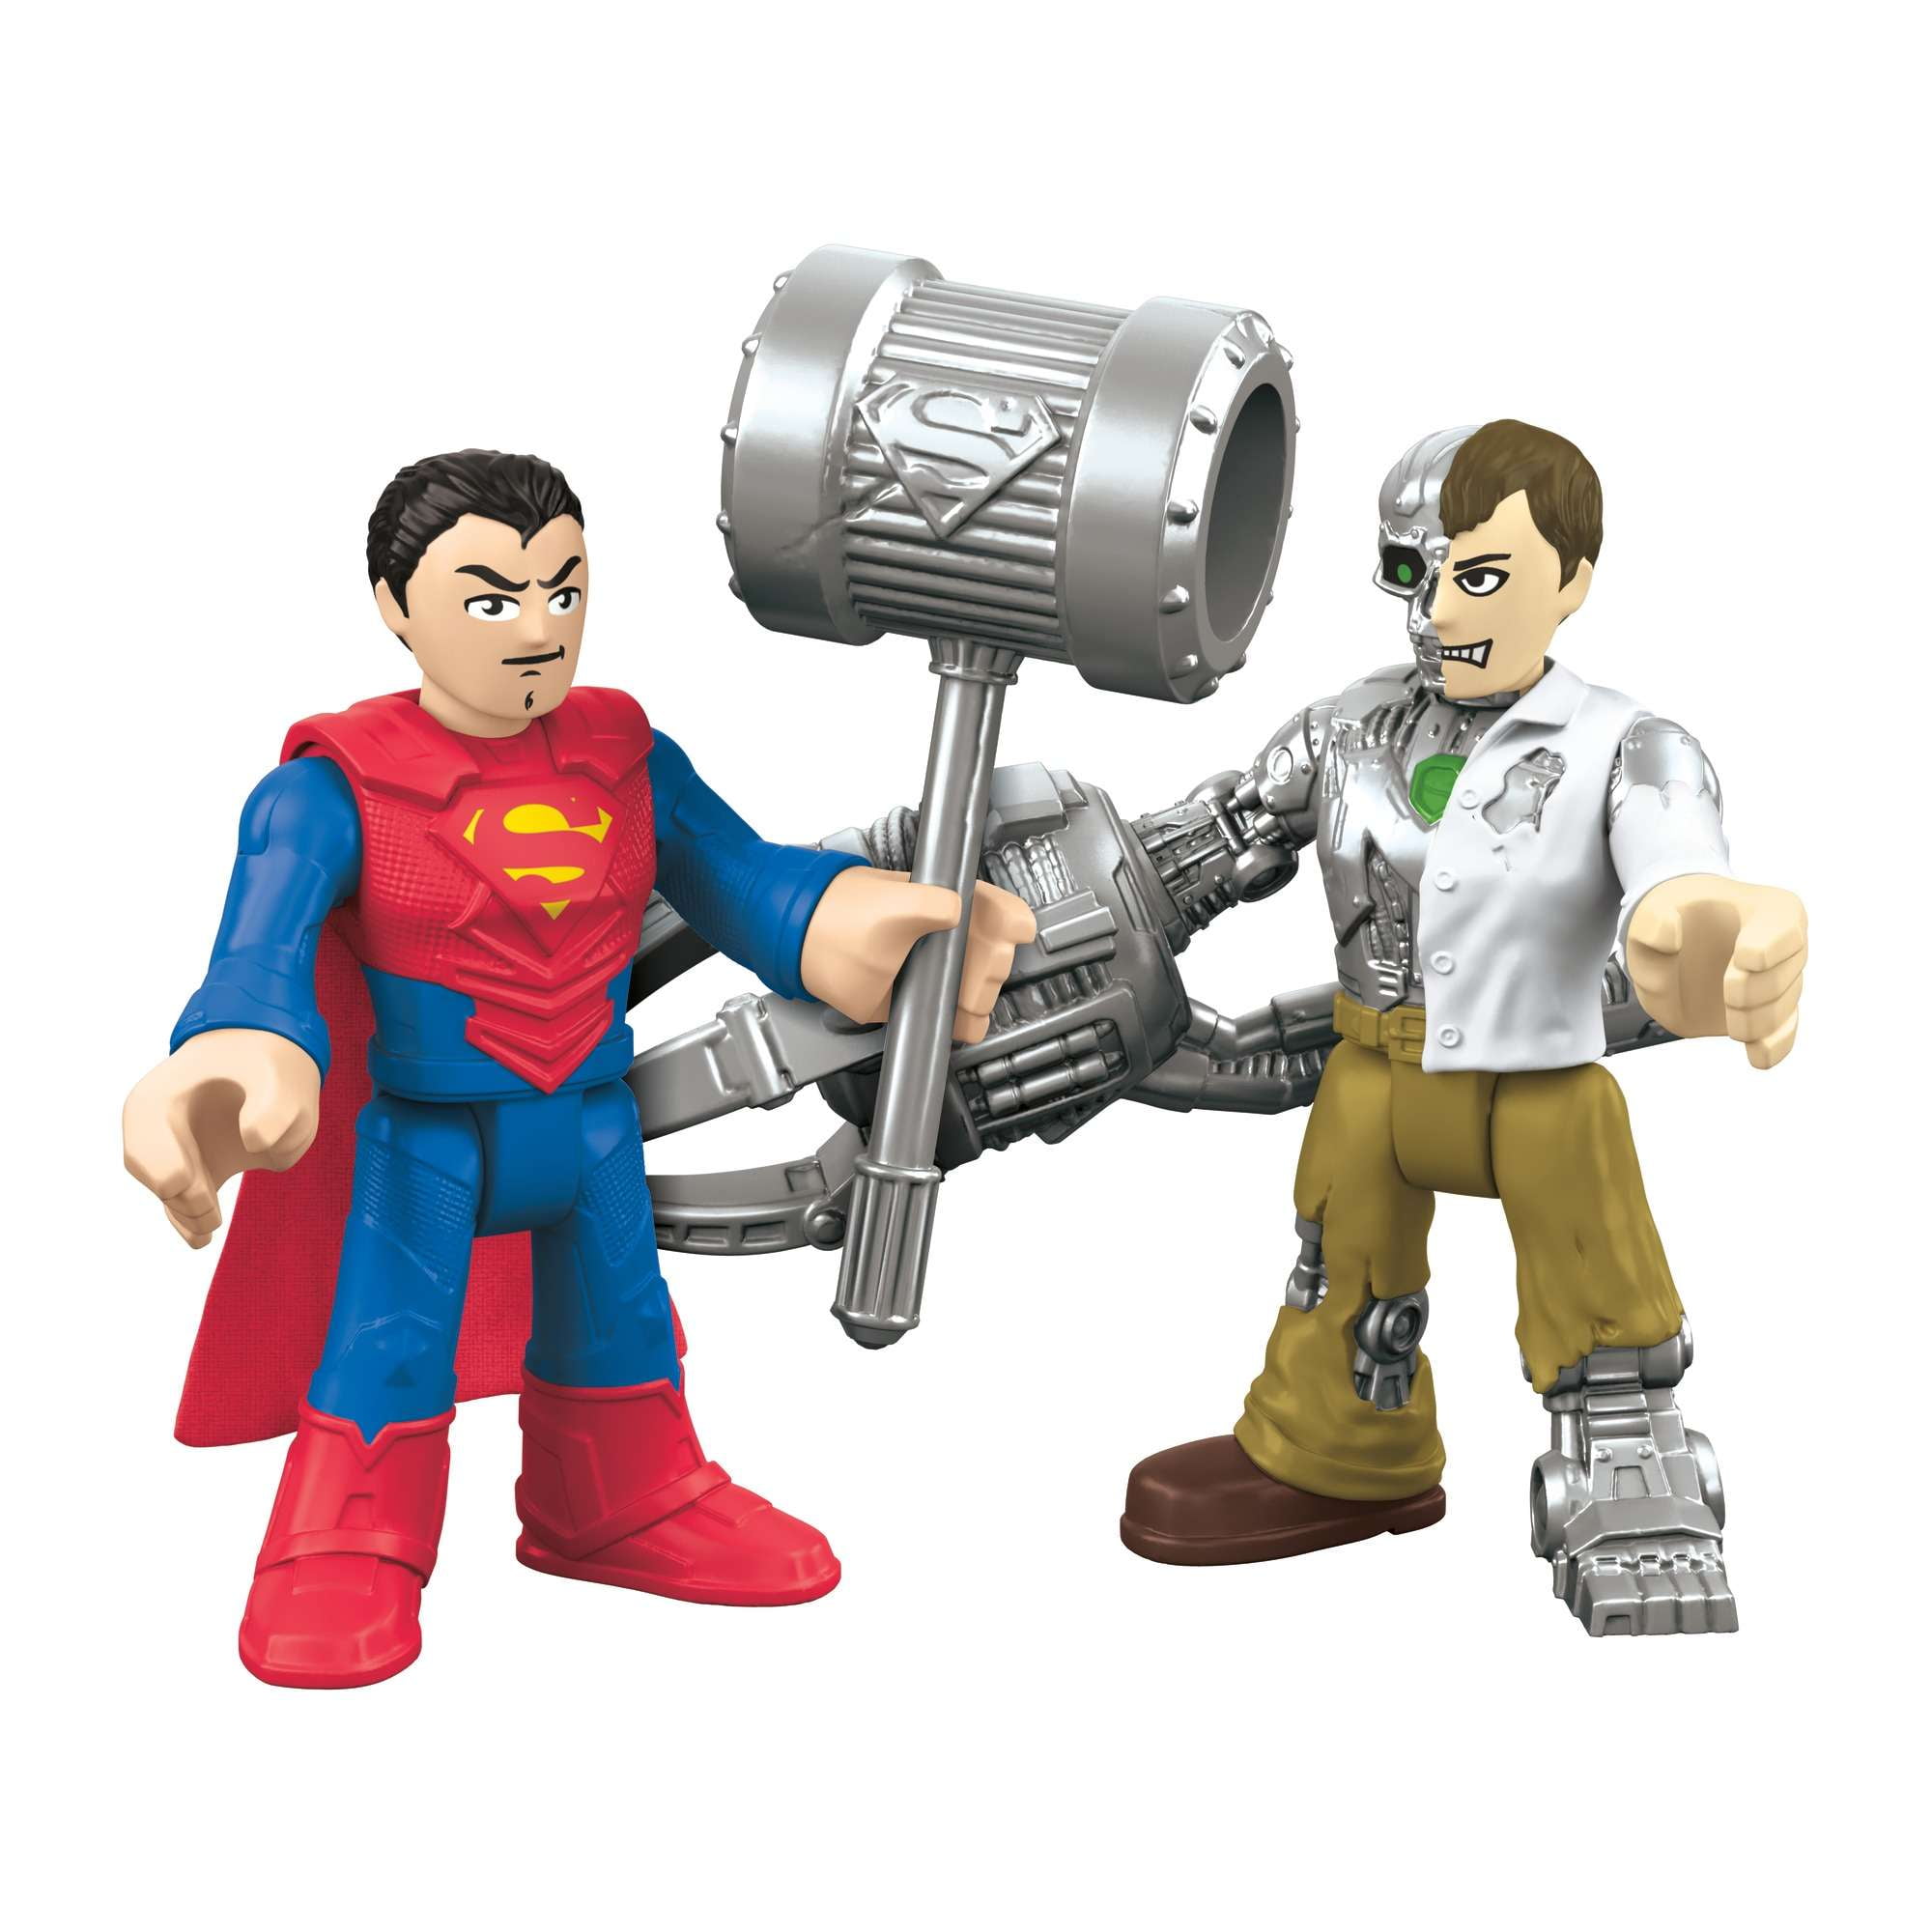 Fisher-Price Imaginext DC Super Friends series dc comics SUPERman Action Figure 